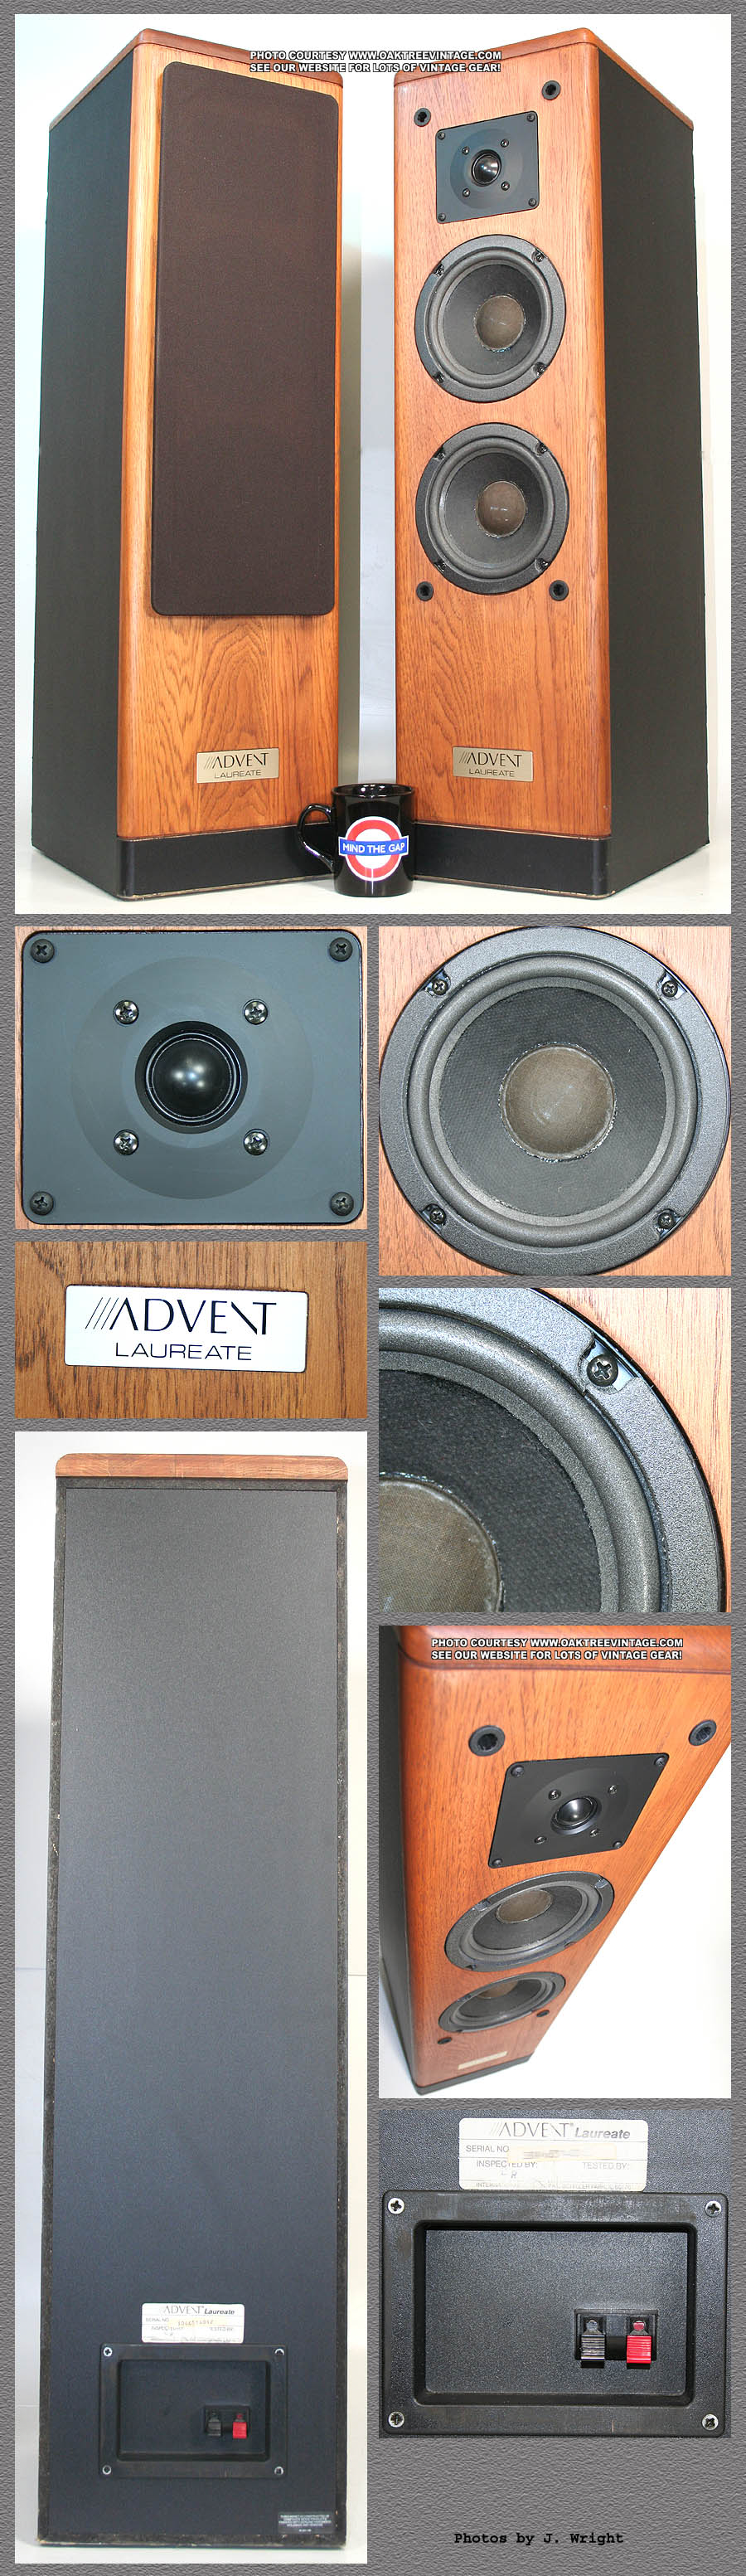 Advent Speaker Serial Numbers